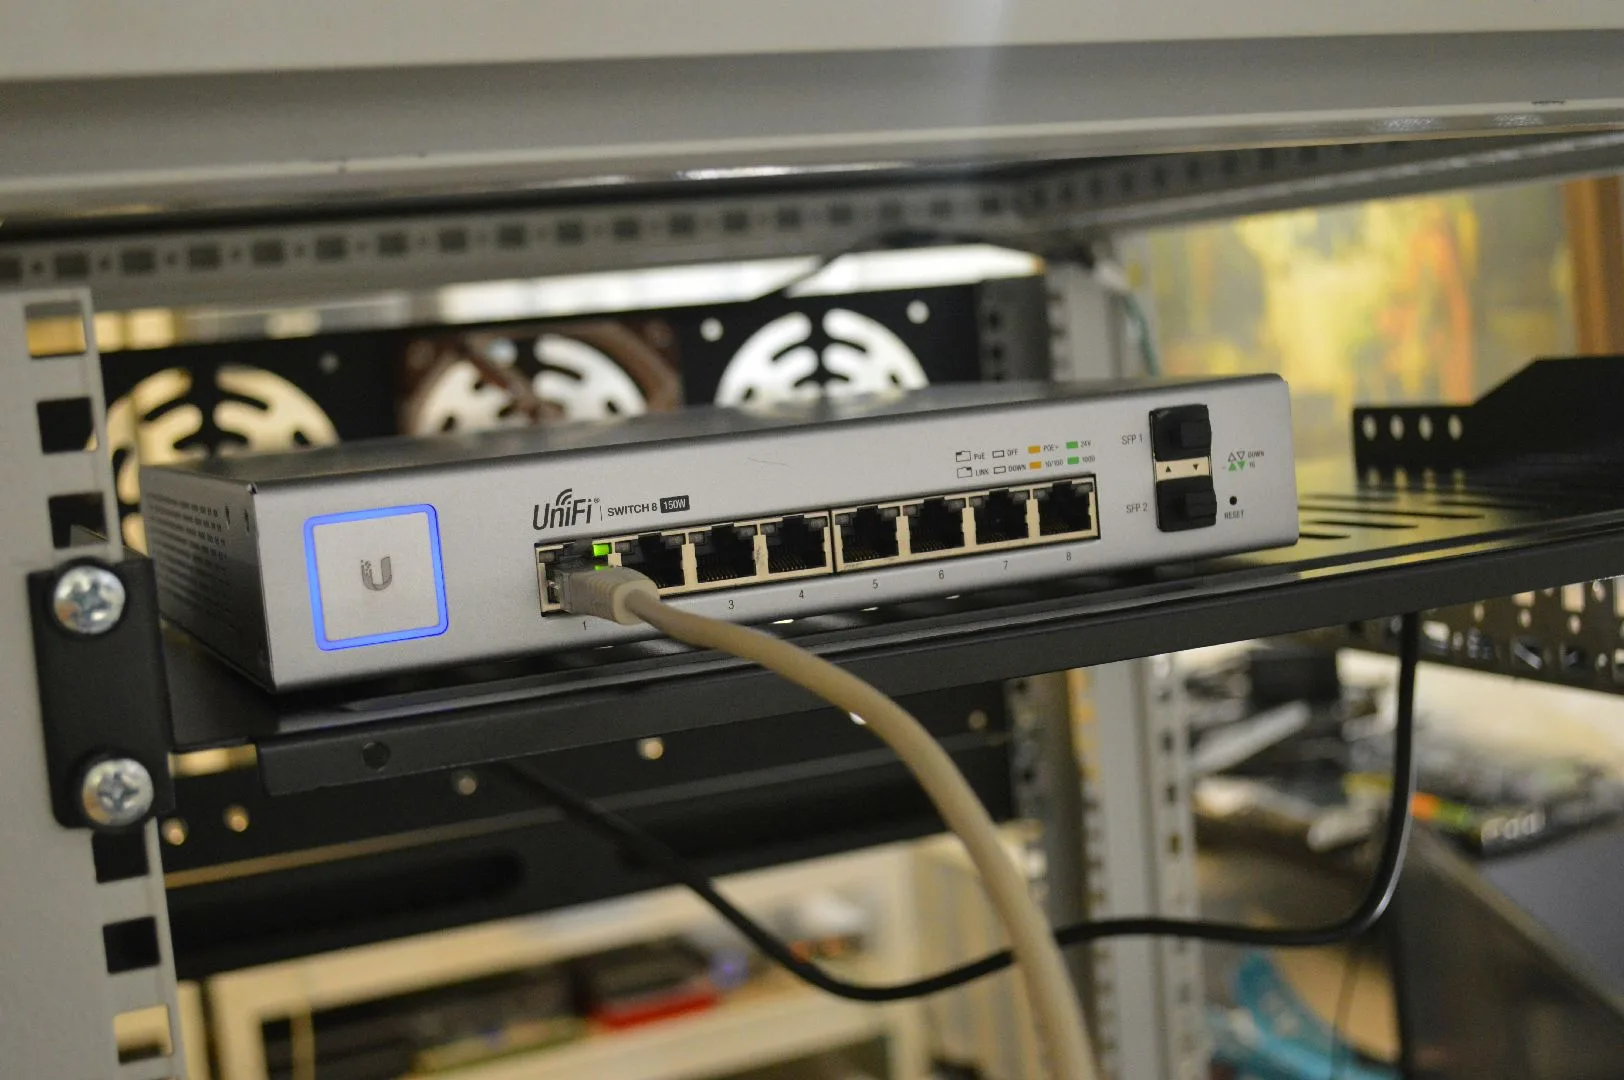 Sunucu dolabında UniFi network switch cihazı.